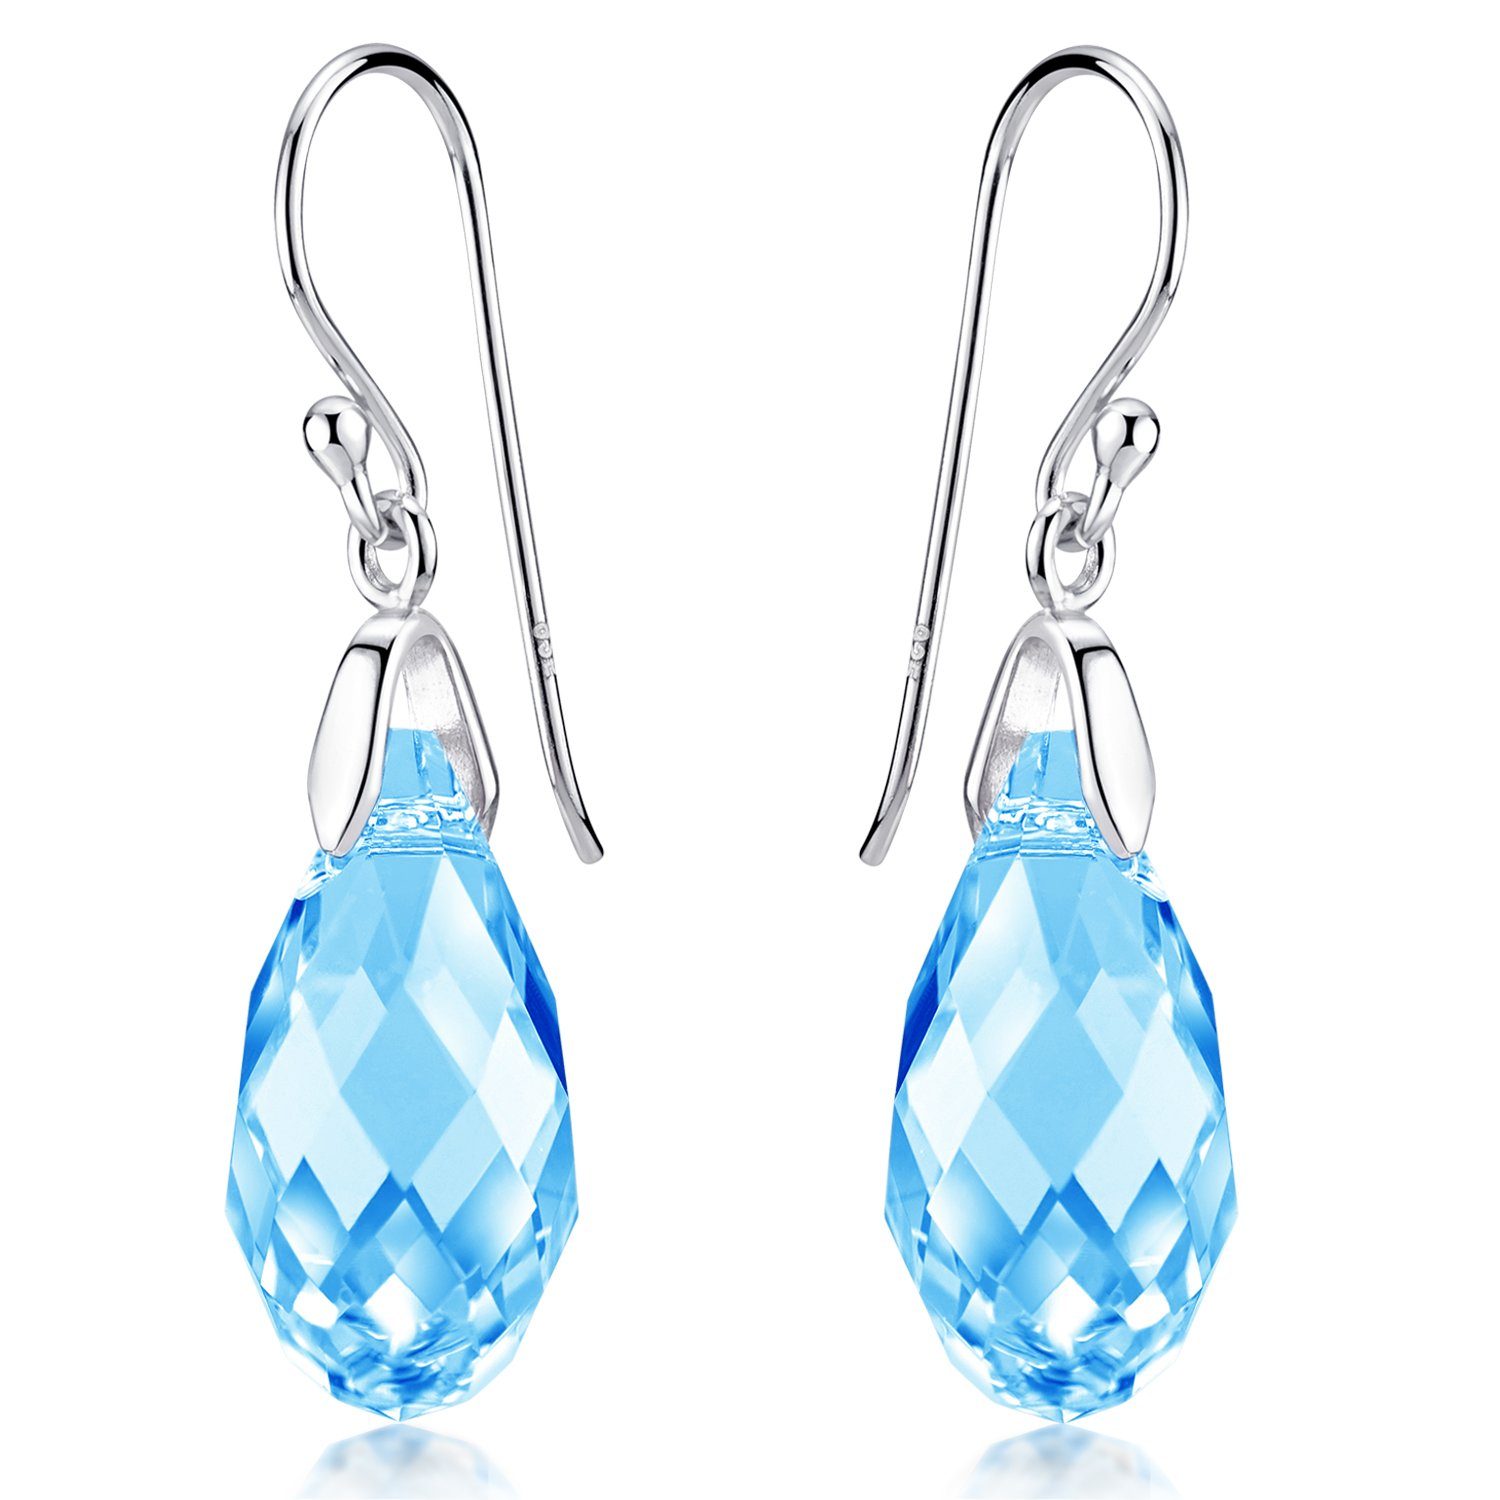 Damen Schmuck Materia Paar Ohrhänger Tropfen Kristall Blau / Hellblau SO-374, Haken aus 925 Sterling Silber